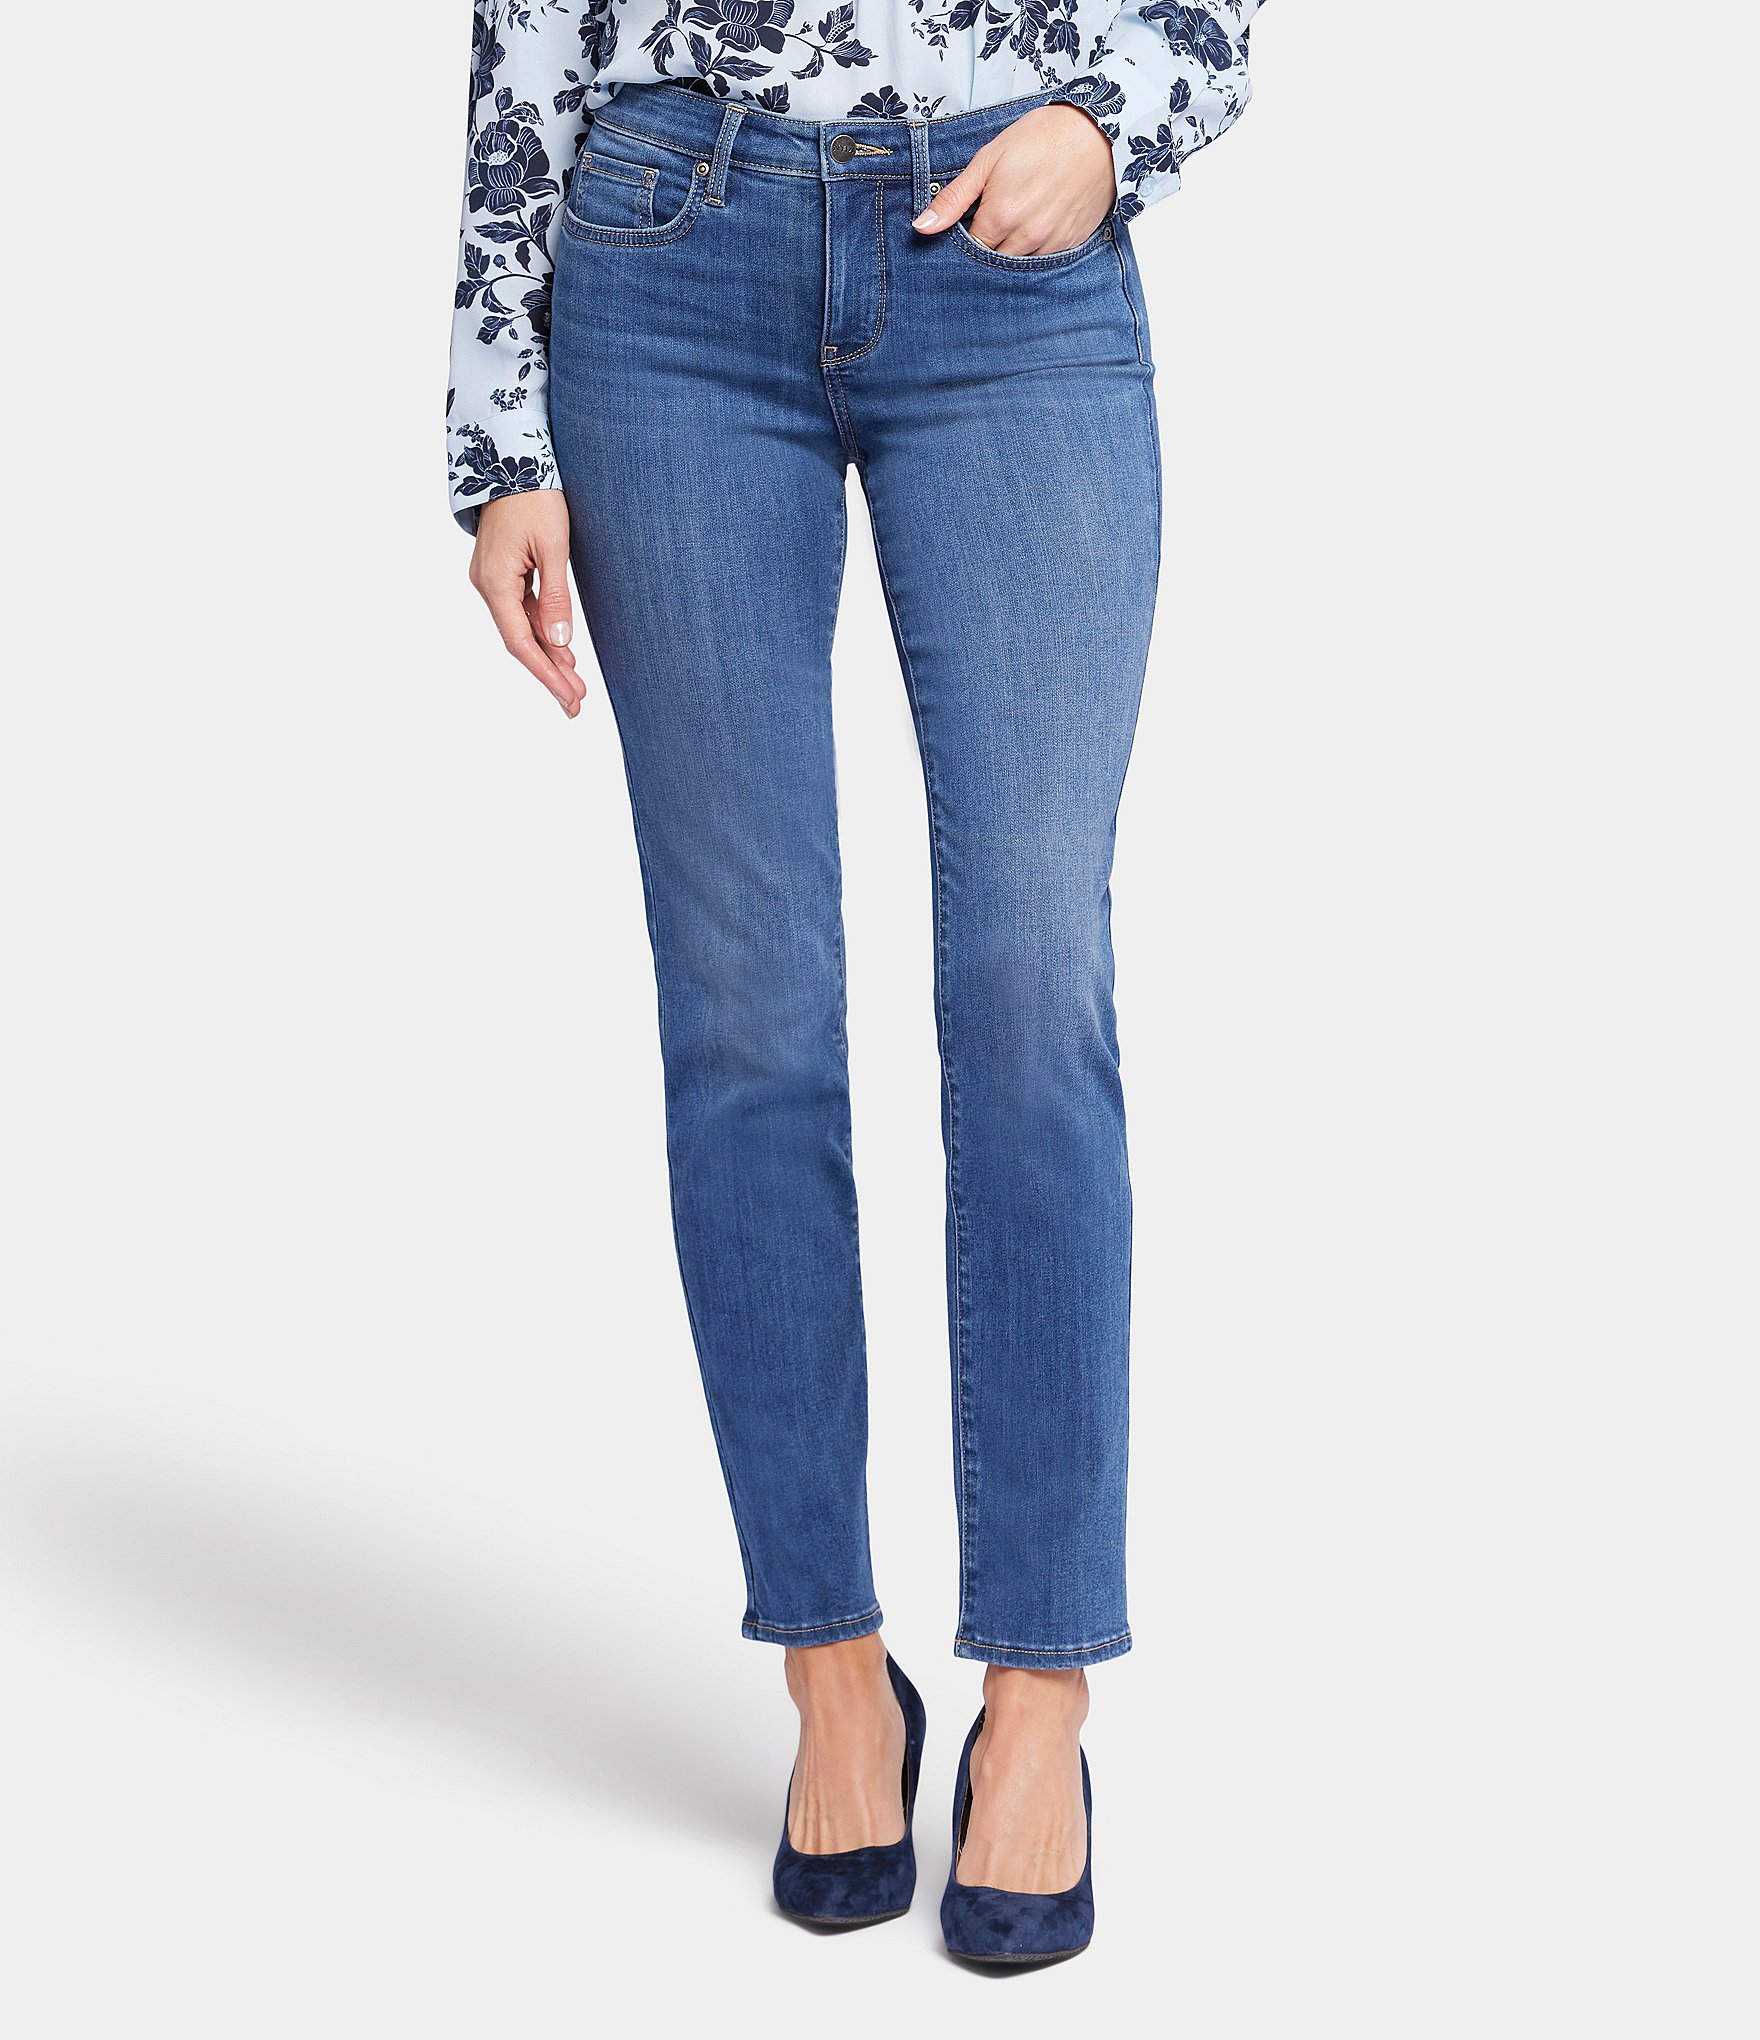 Sale & Clearance Blue Women's Jeans & Denim | Dillard's